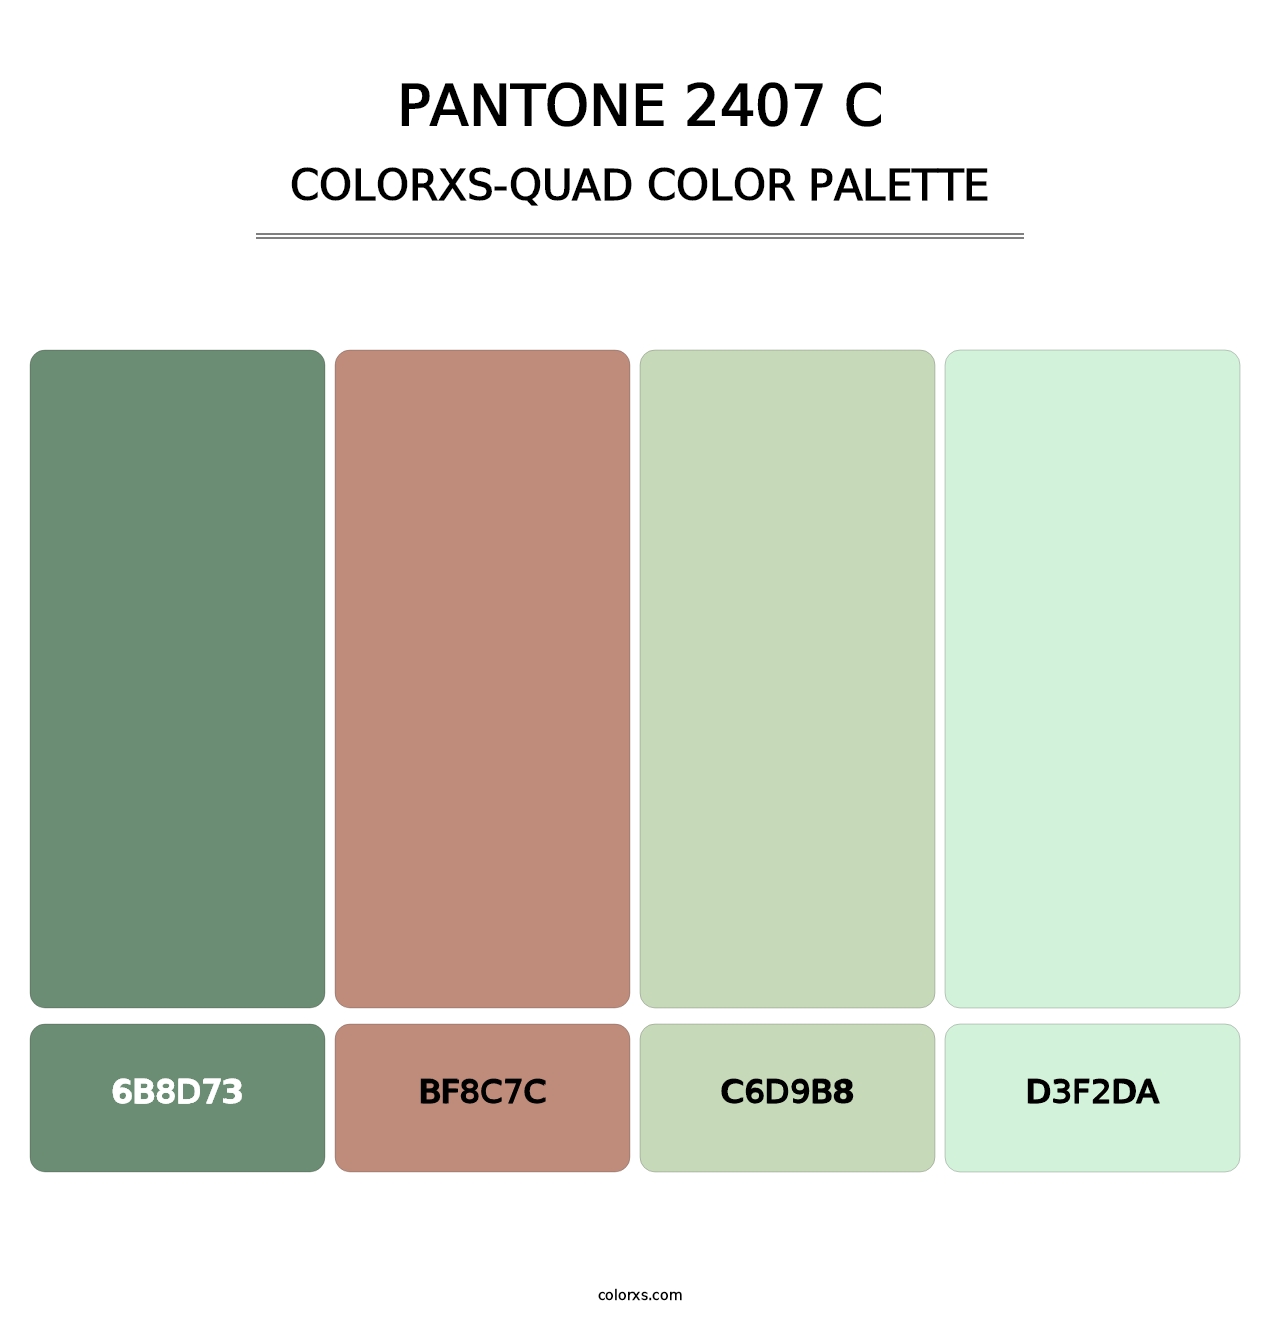 PANTONE 2407 C - Colorxs Quad Palette